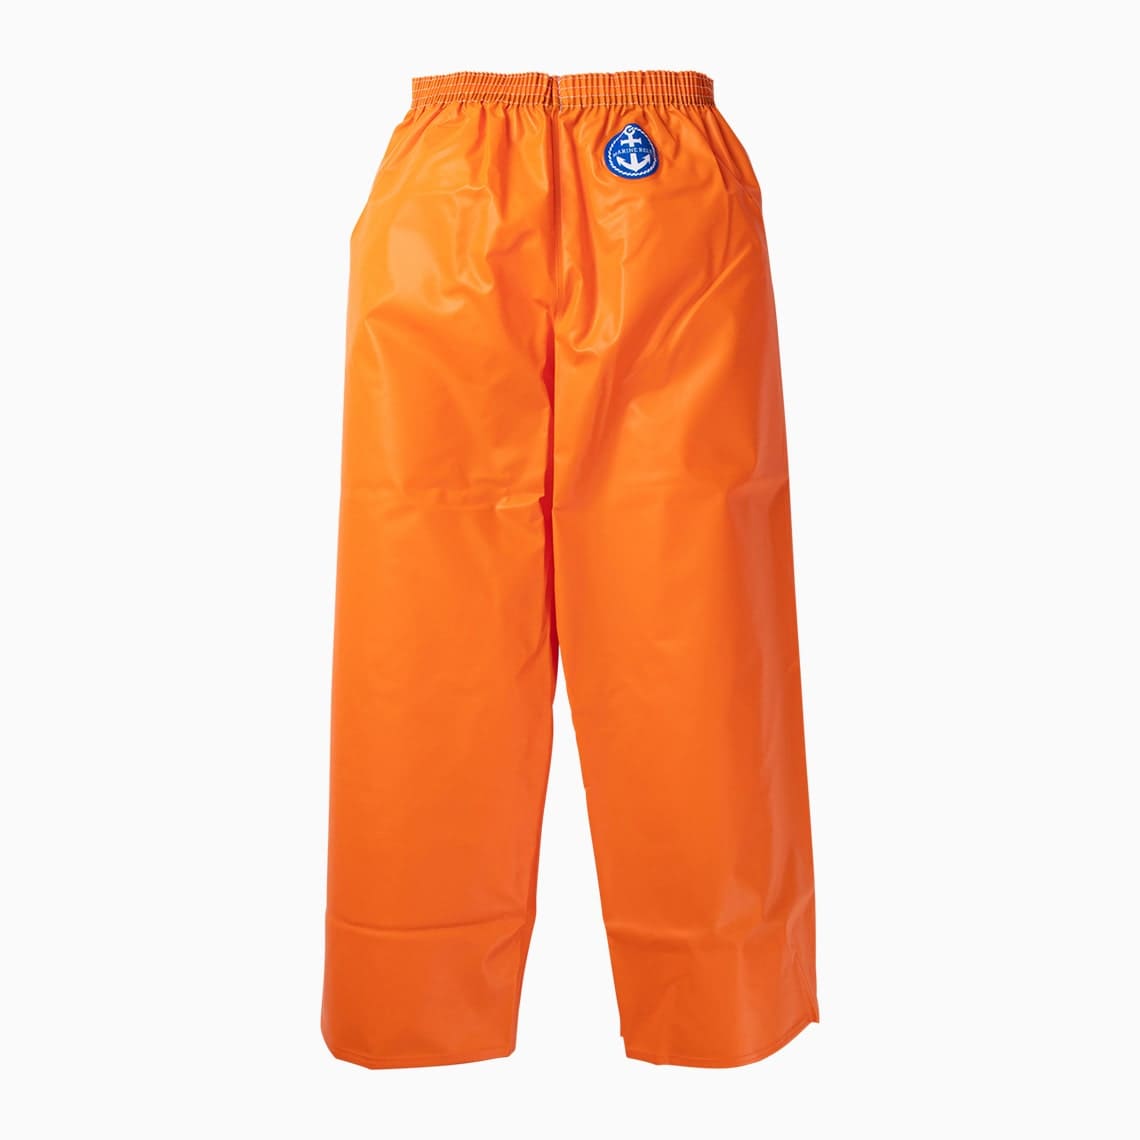 Marine rely pants Rescue orange